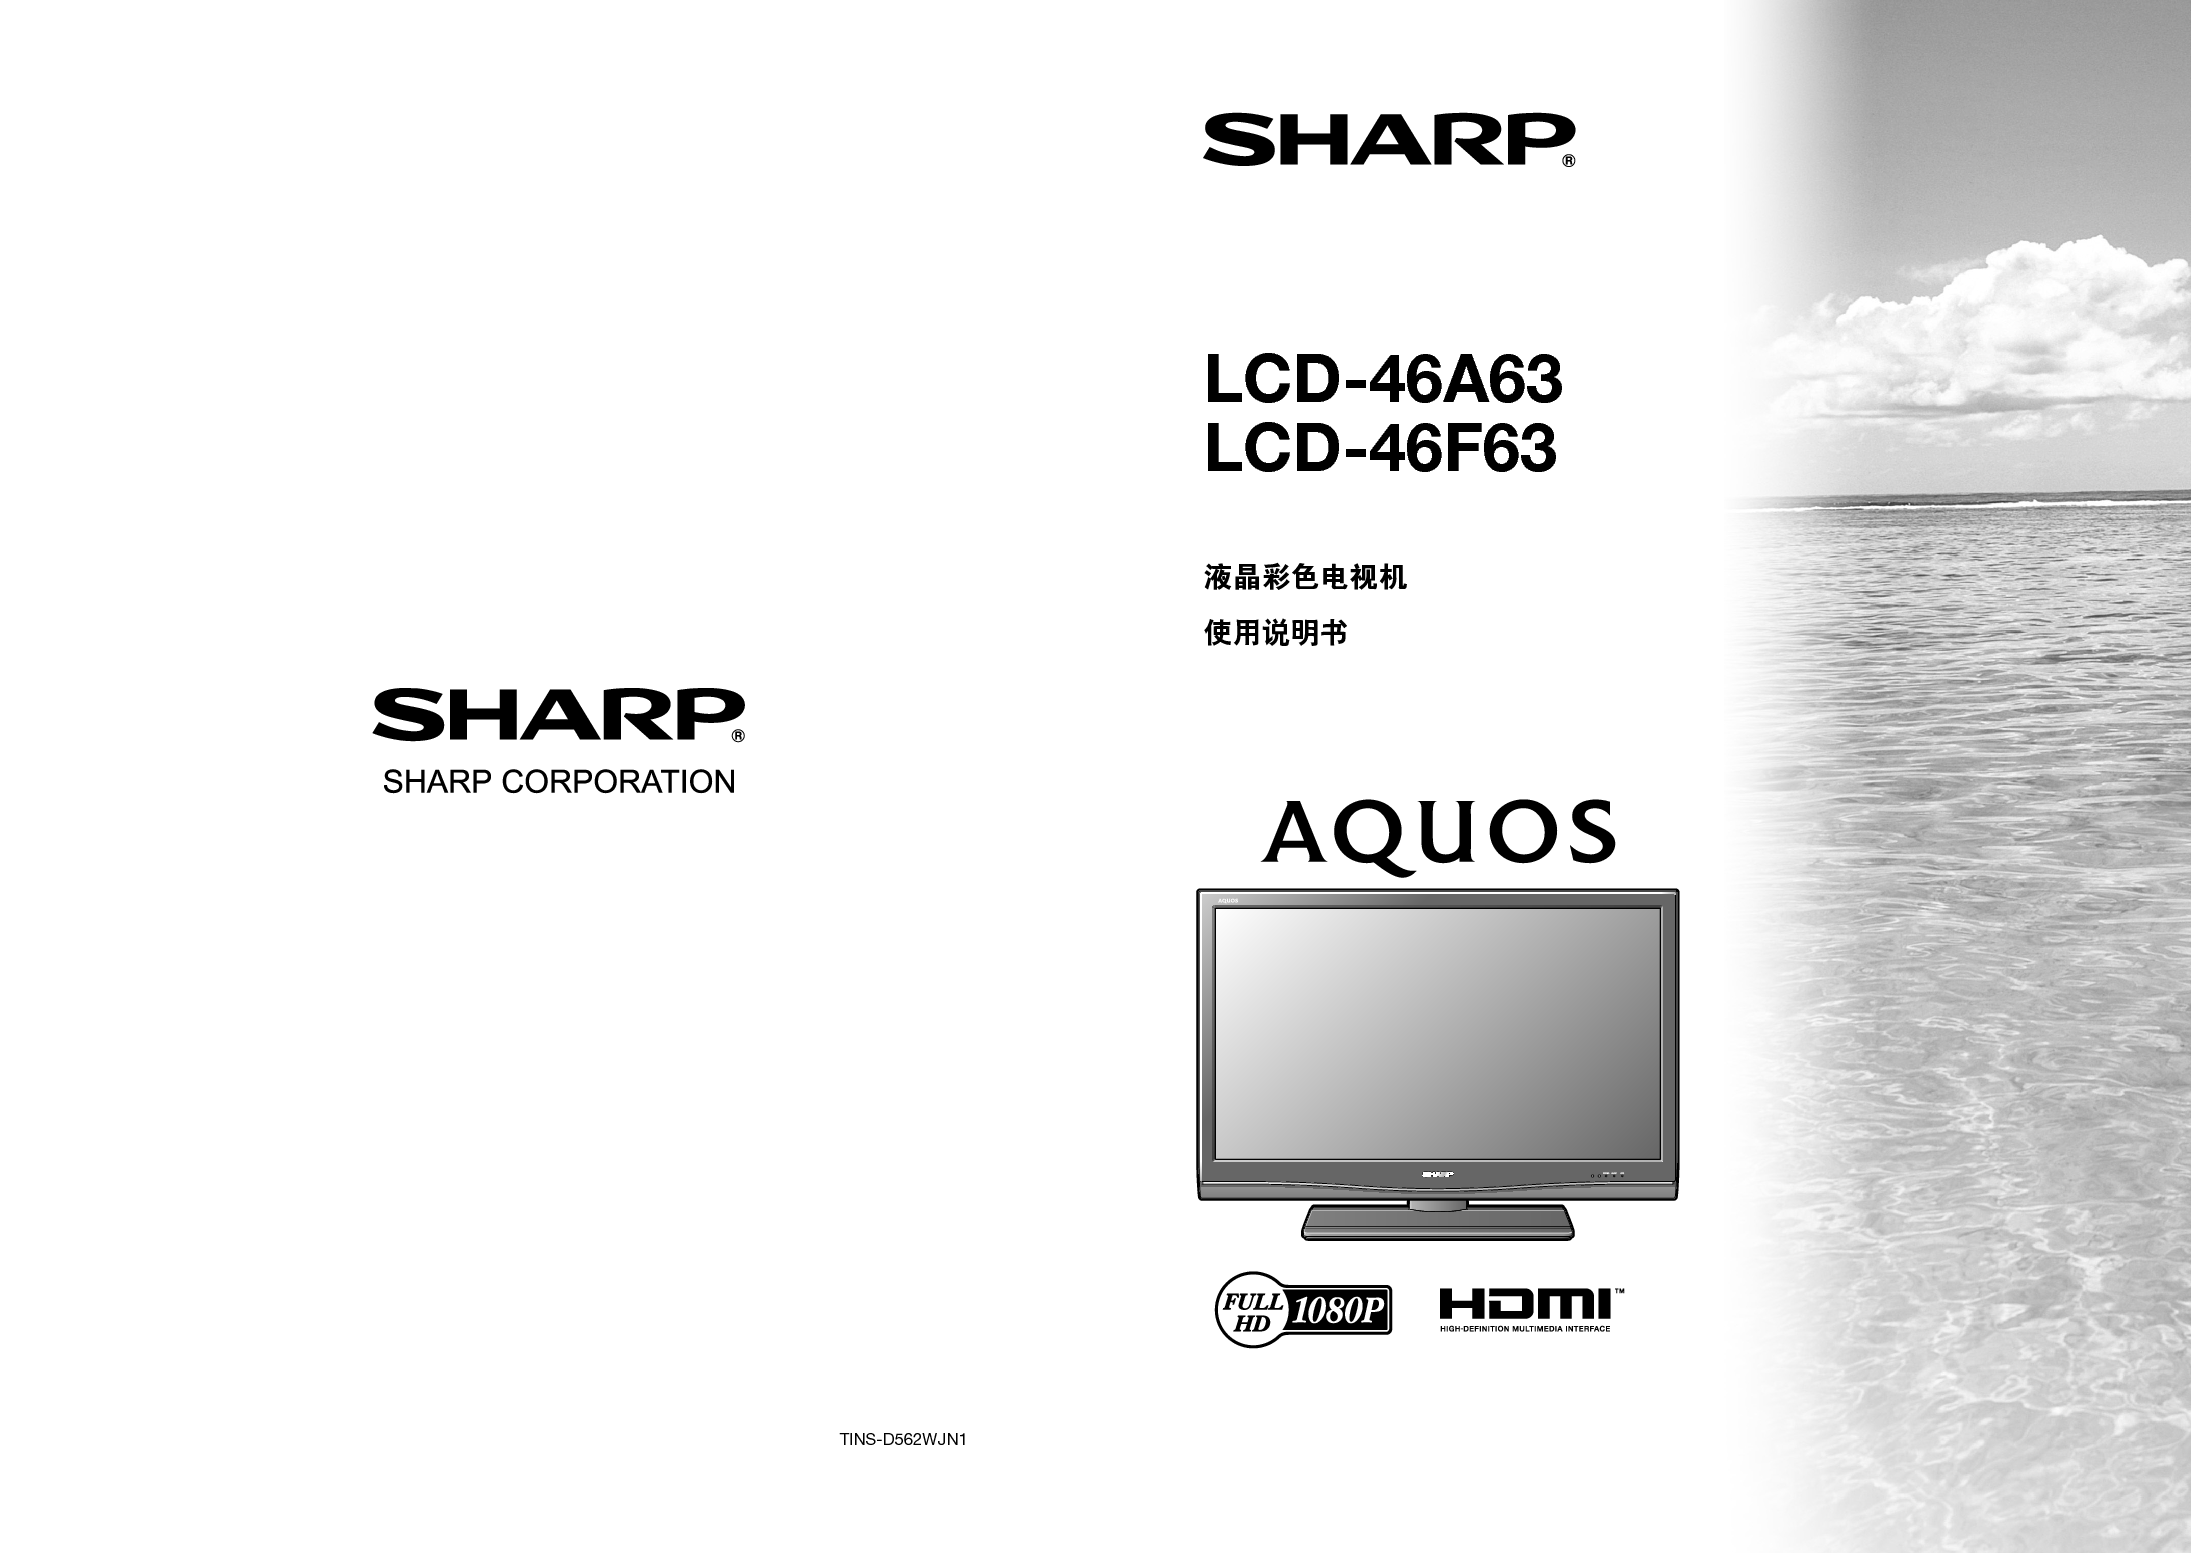 夏普 Sharp LCD-46A63 说明书 封面